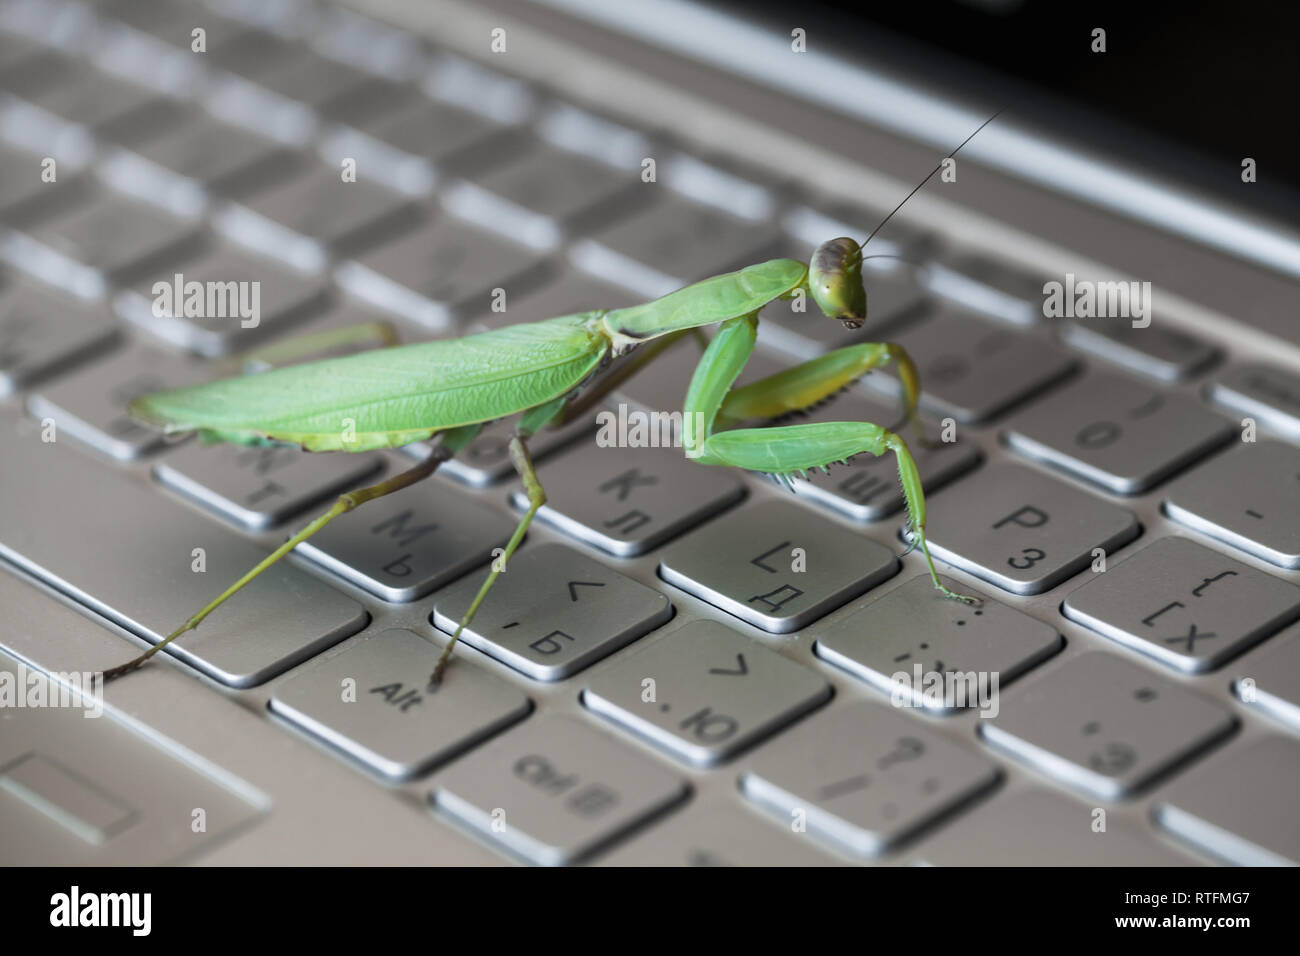 Bug Software metafora, mantide passeggiate su un computer portatile con tastiera inglese e lettere in russo Foto Stock